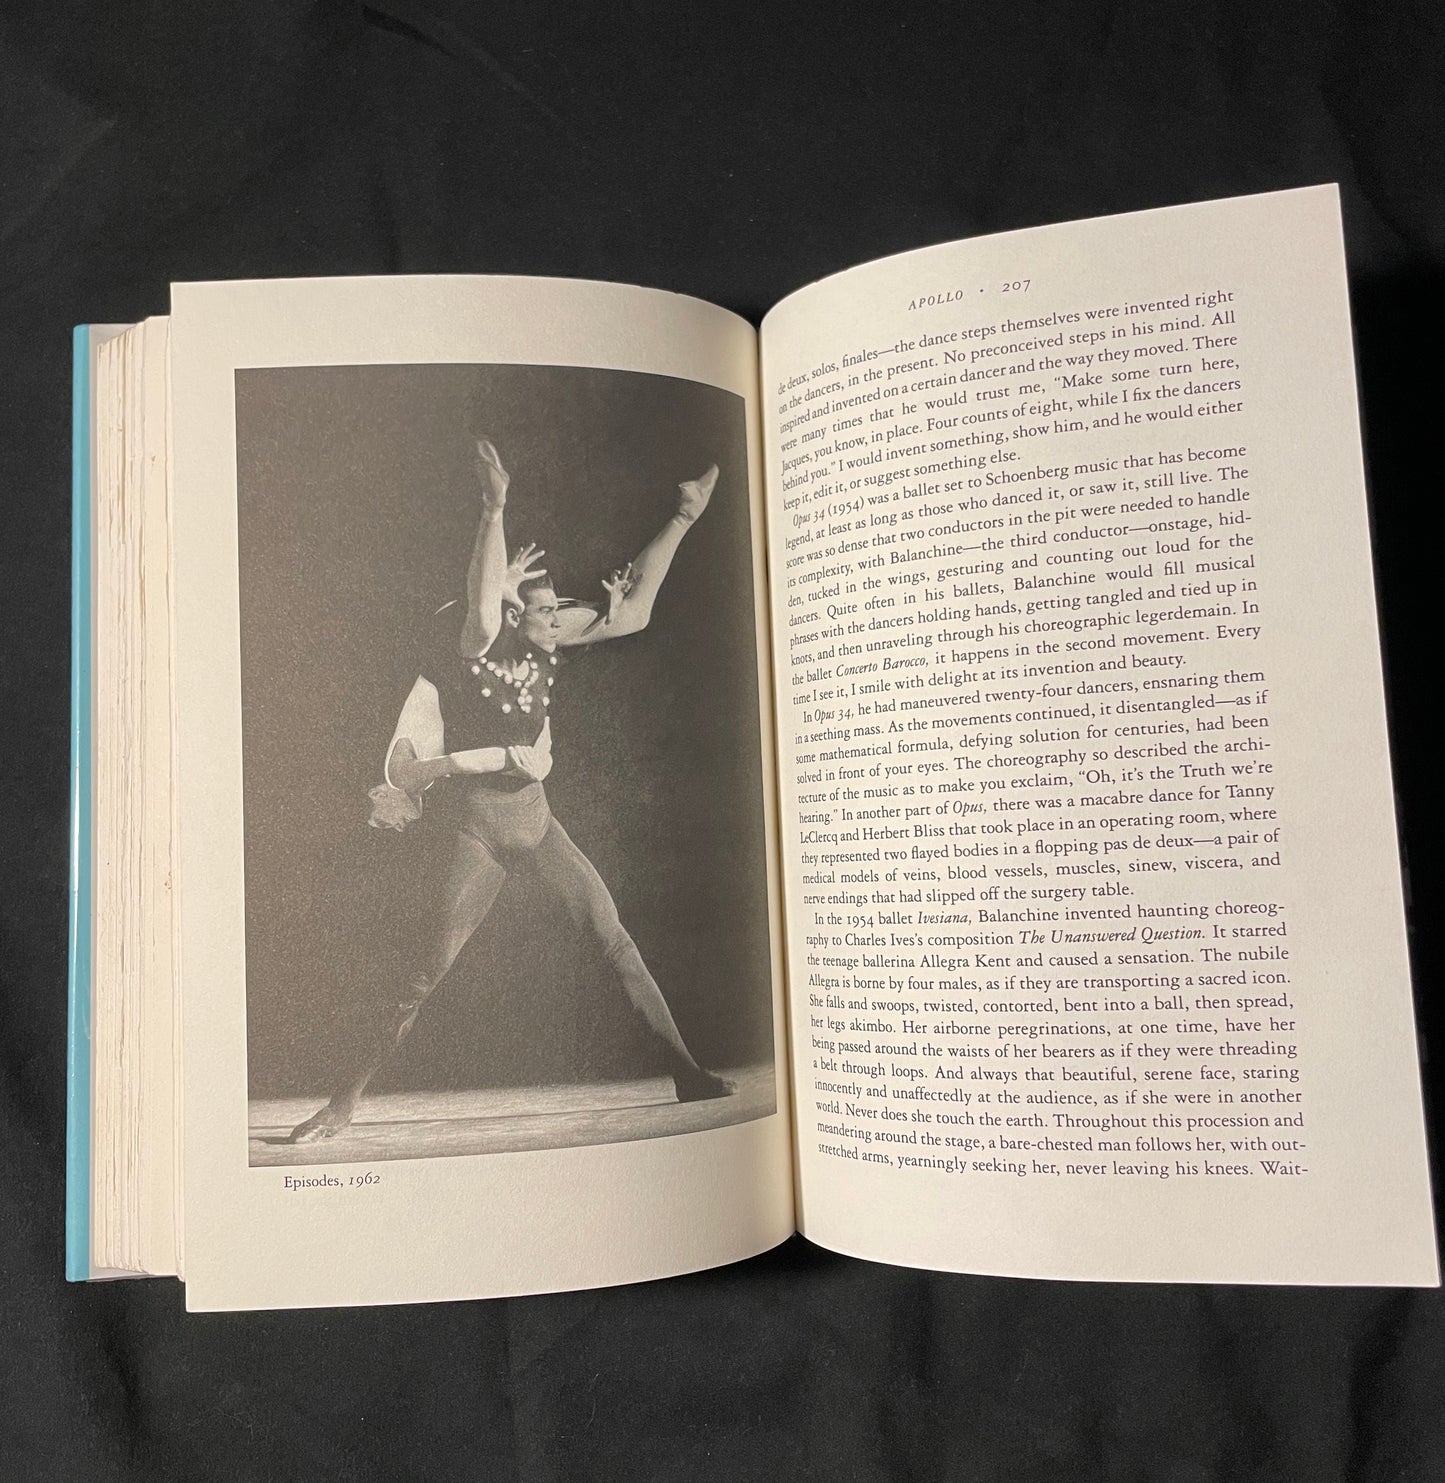 Jacques d'Amboise's Autobiography: I Was a Dancer